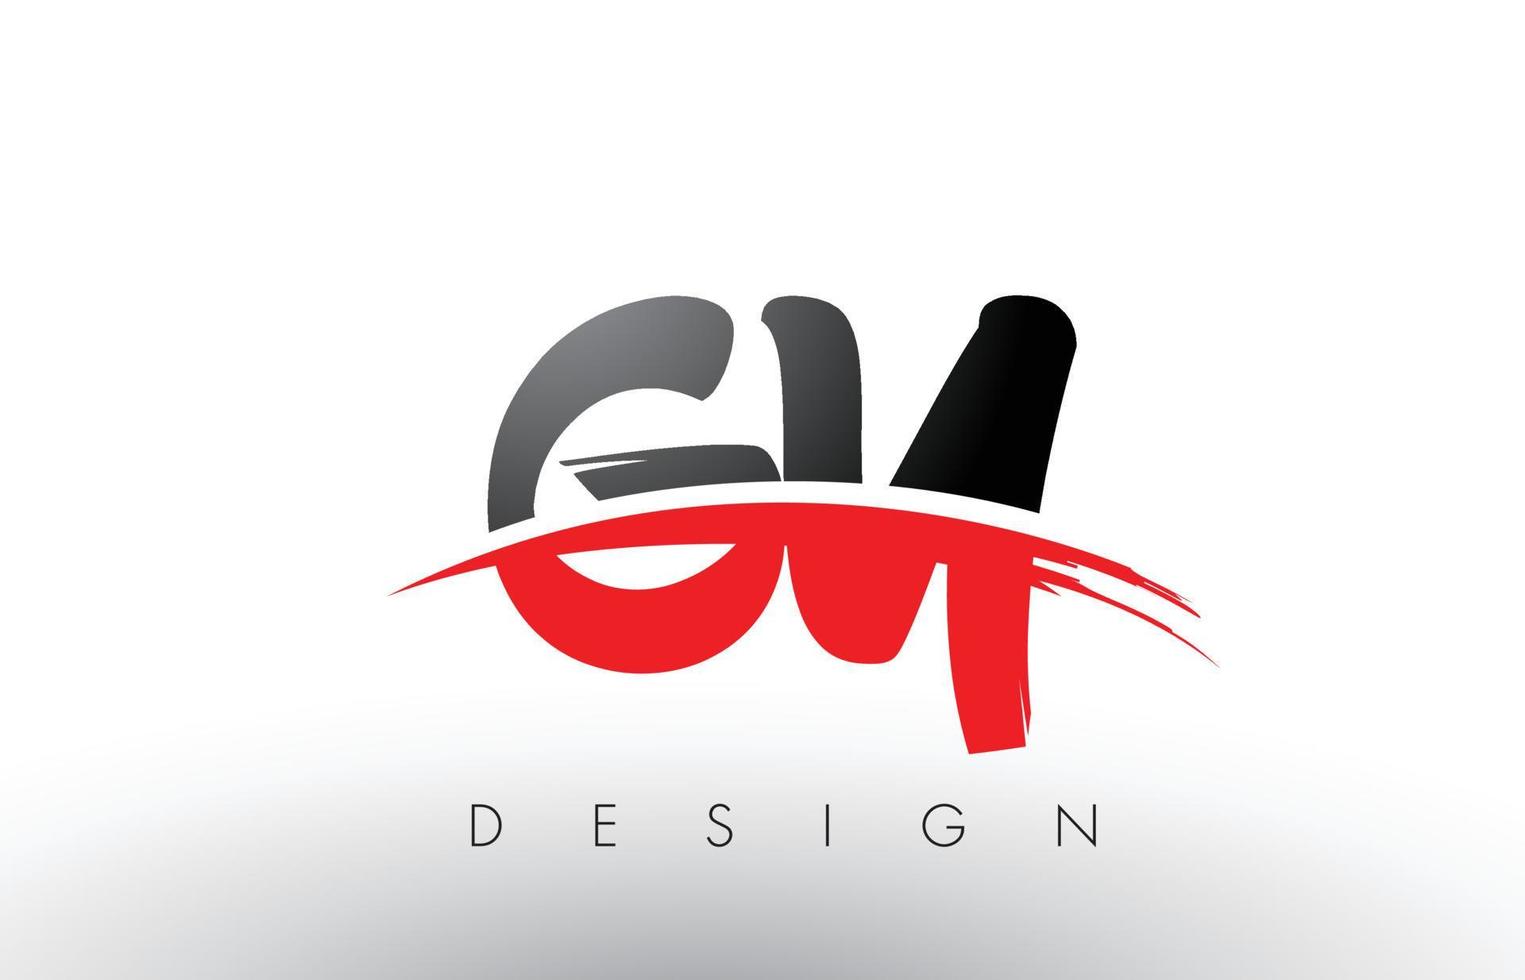 Letras del logotipo de gy gy brush con frente de cepillo swoosh rojo y negro vector